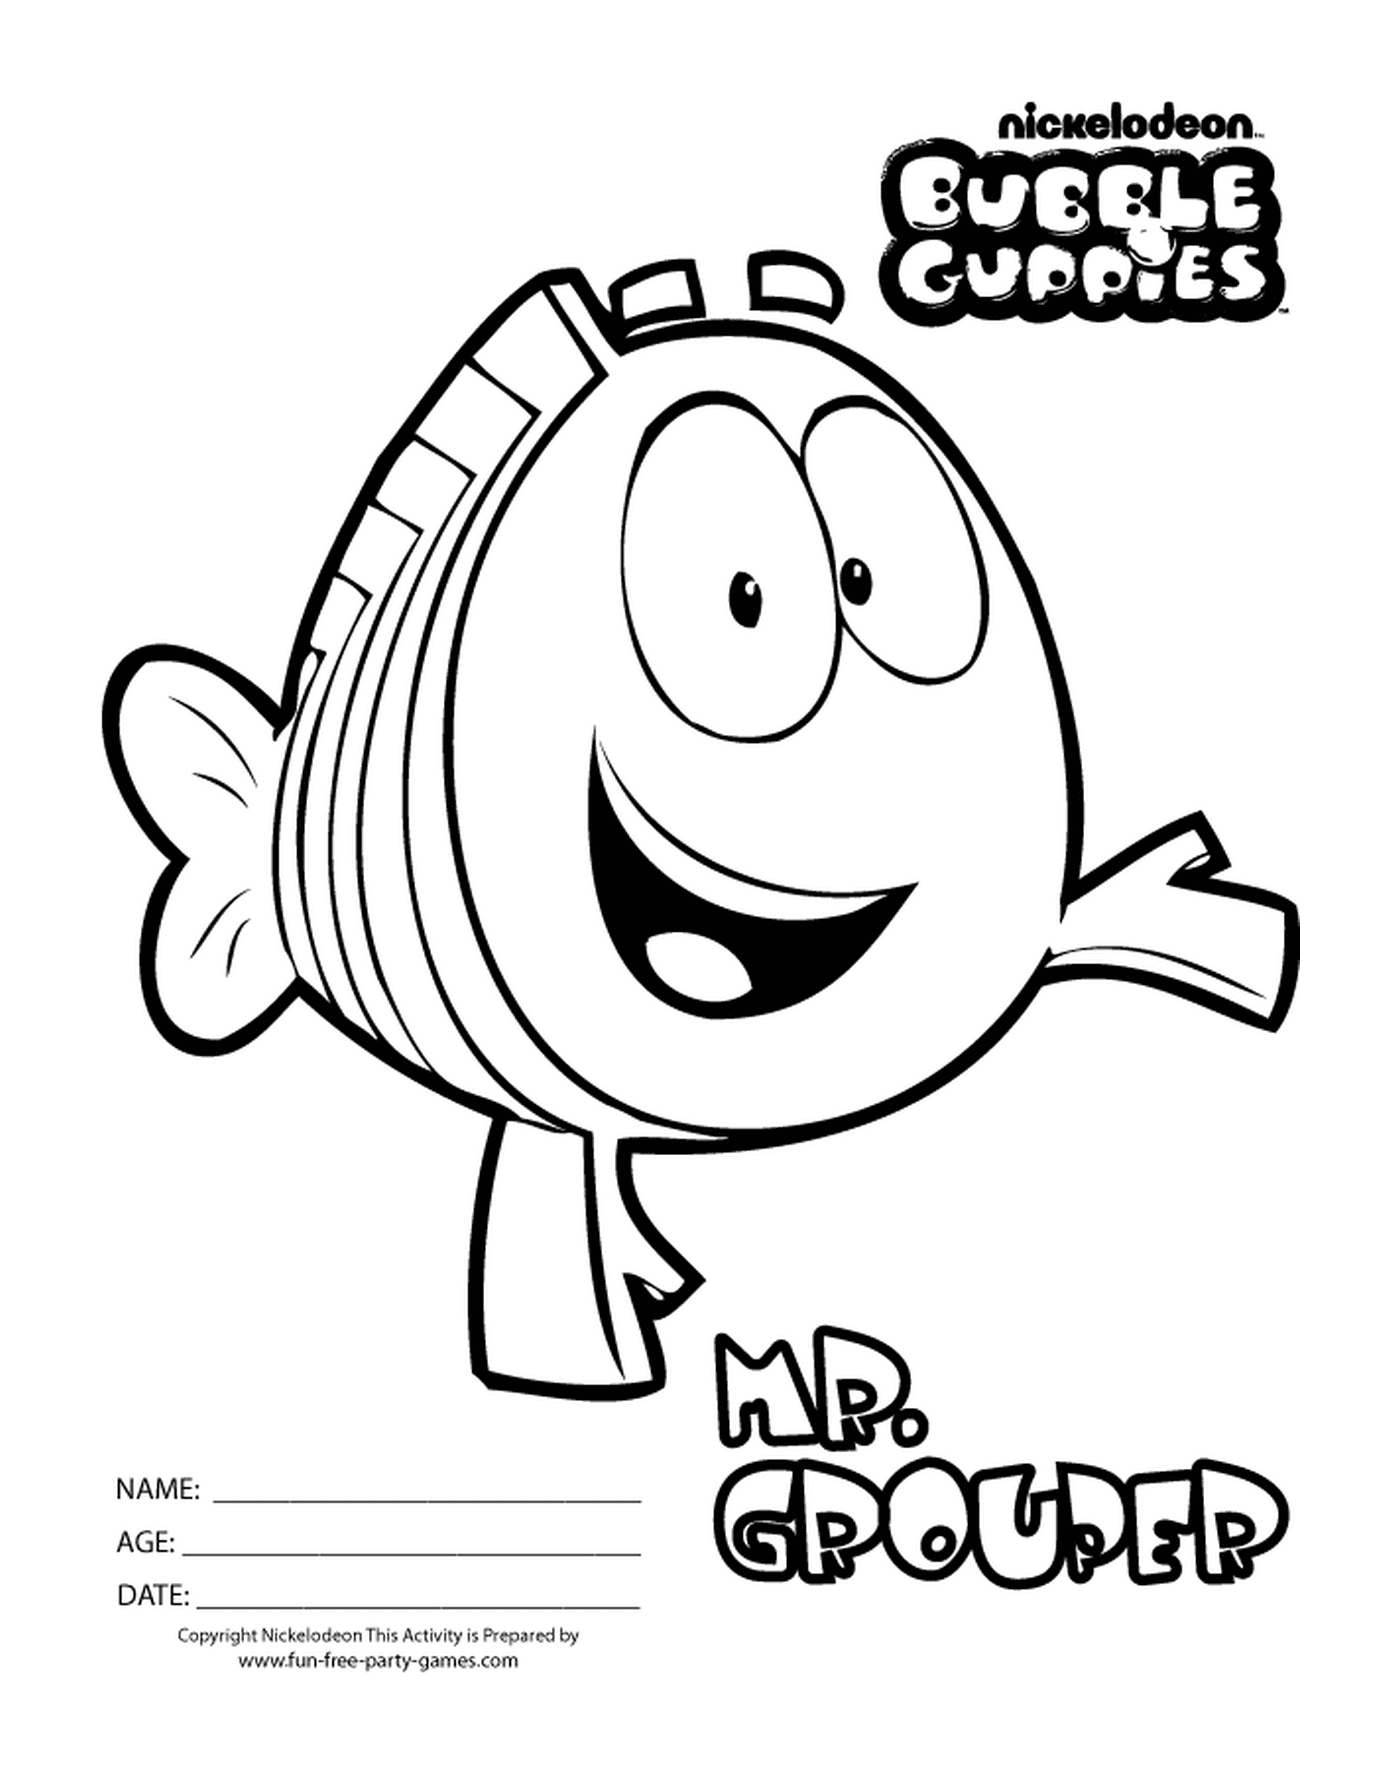  Mr Grouper des Bubble Guppies, un pez animado 